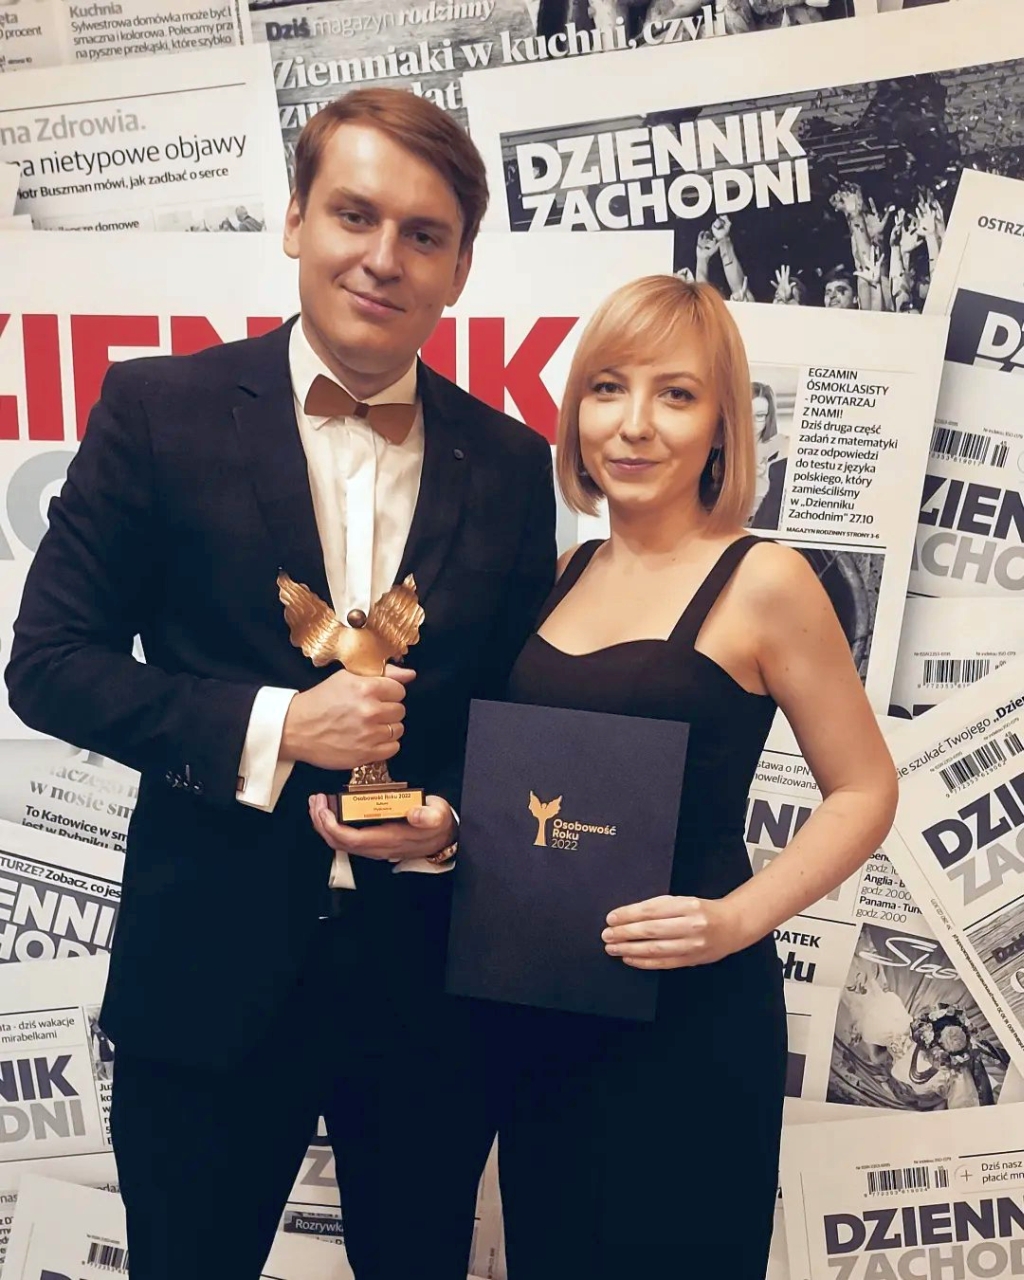 Na zdj. Michał Kirker z żoną Agnieszką na gali wręczenia nagród (fot. Facebook/Michał Kirker)